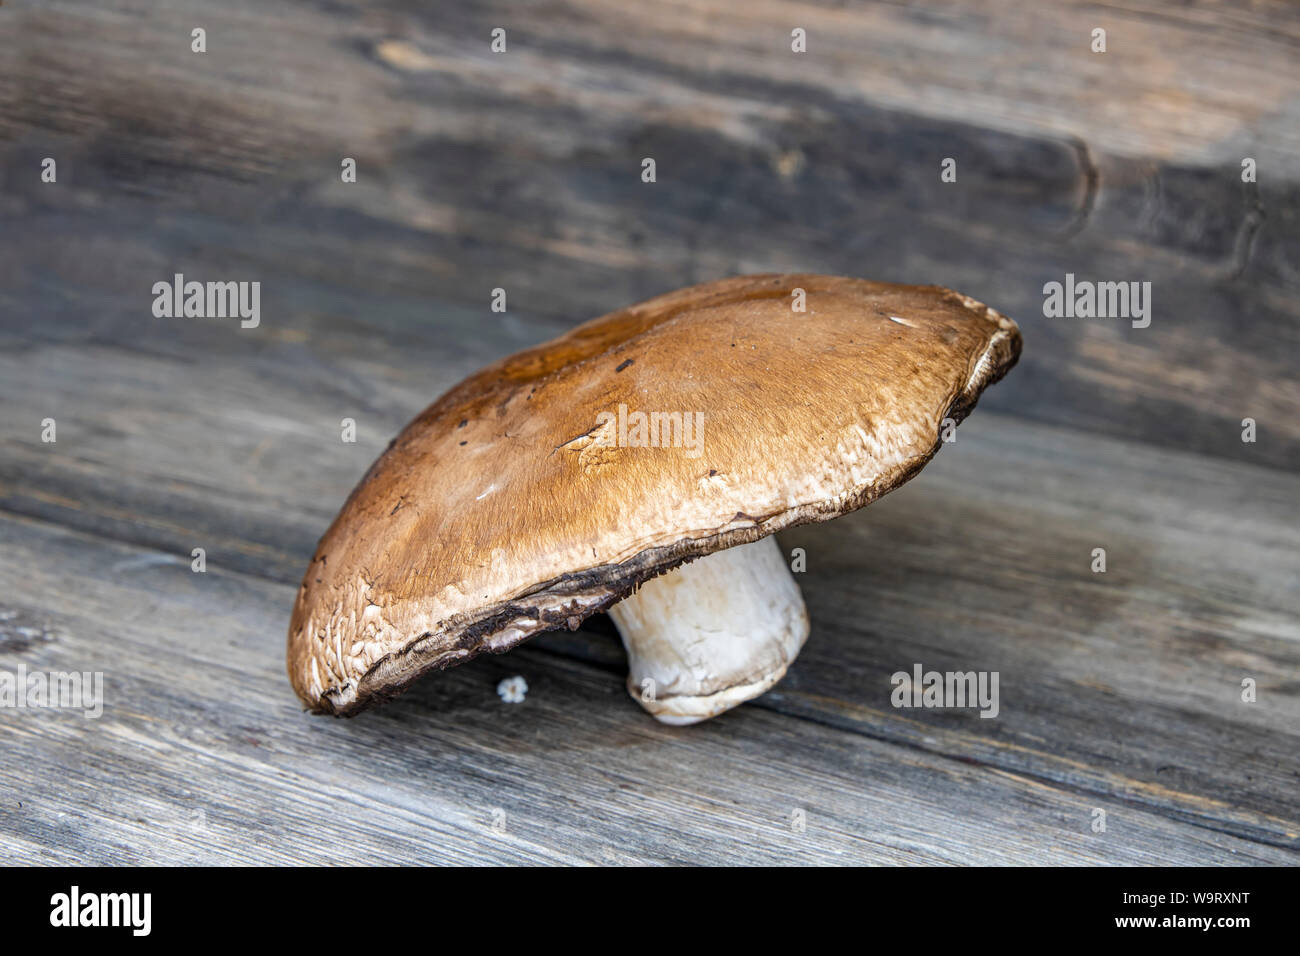 Frische Portobello Pilze close-up auf einer hölzernen Oberfläche Stockfoto